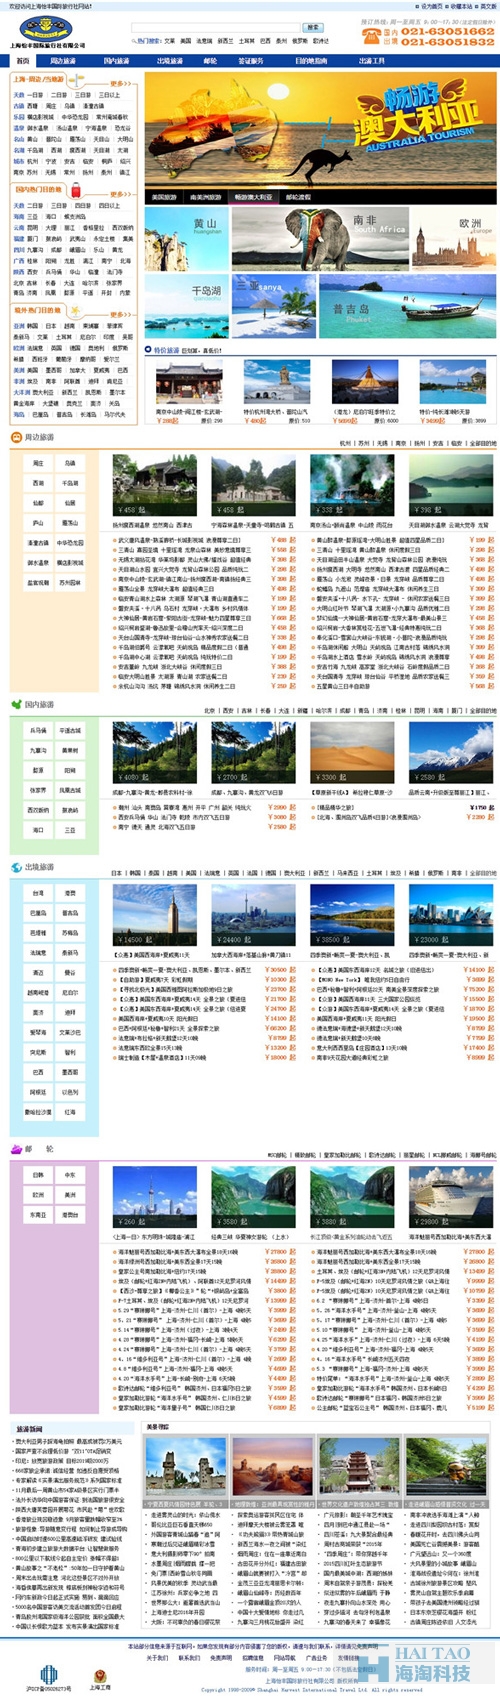 上海怡丰国际旅行社有限公司网站建设,专业旅游网站建设,旅游行业网站建设方案